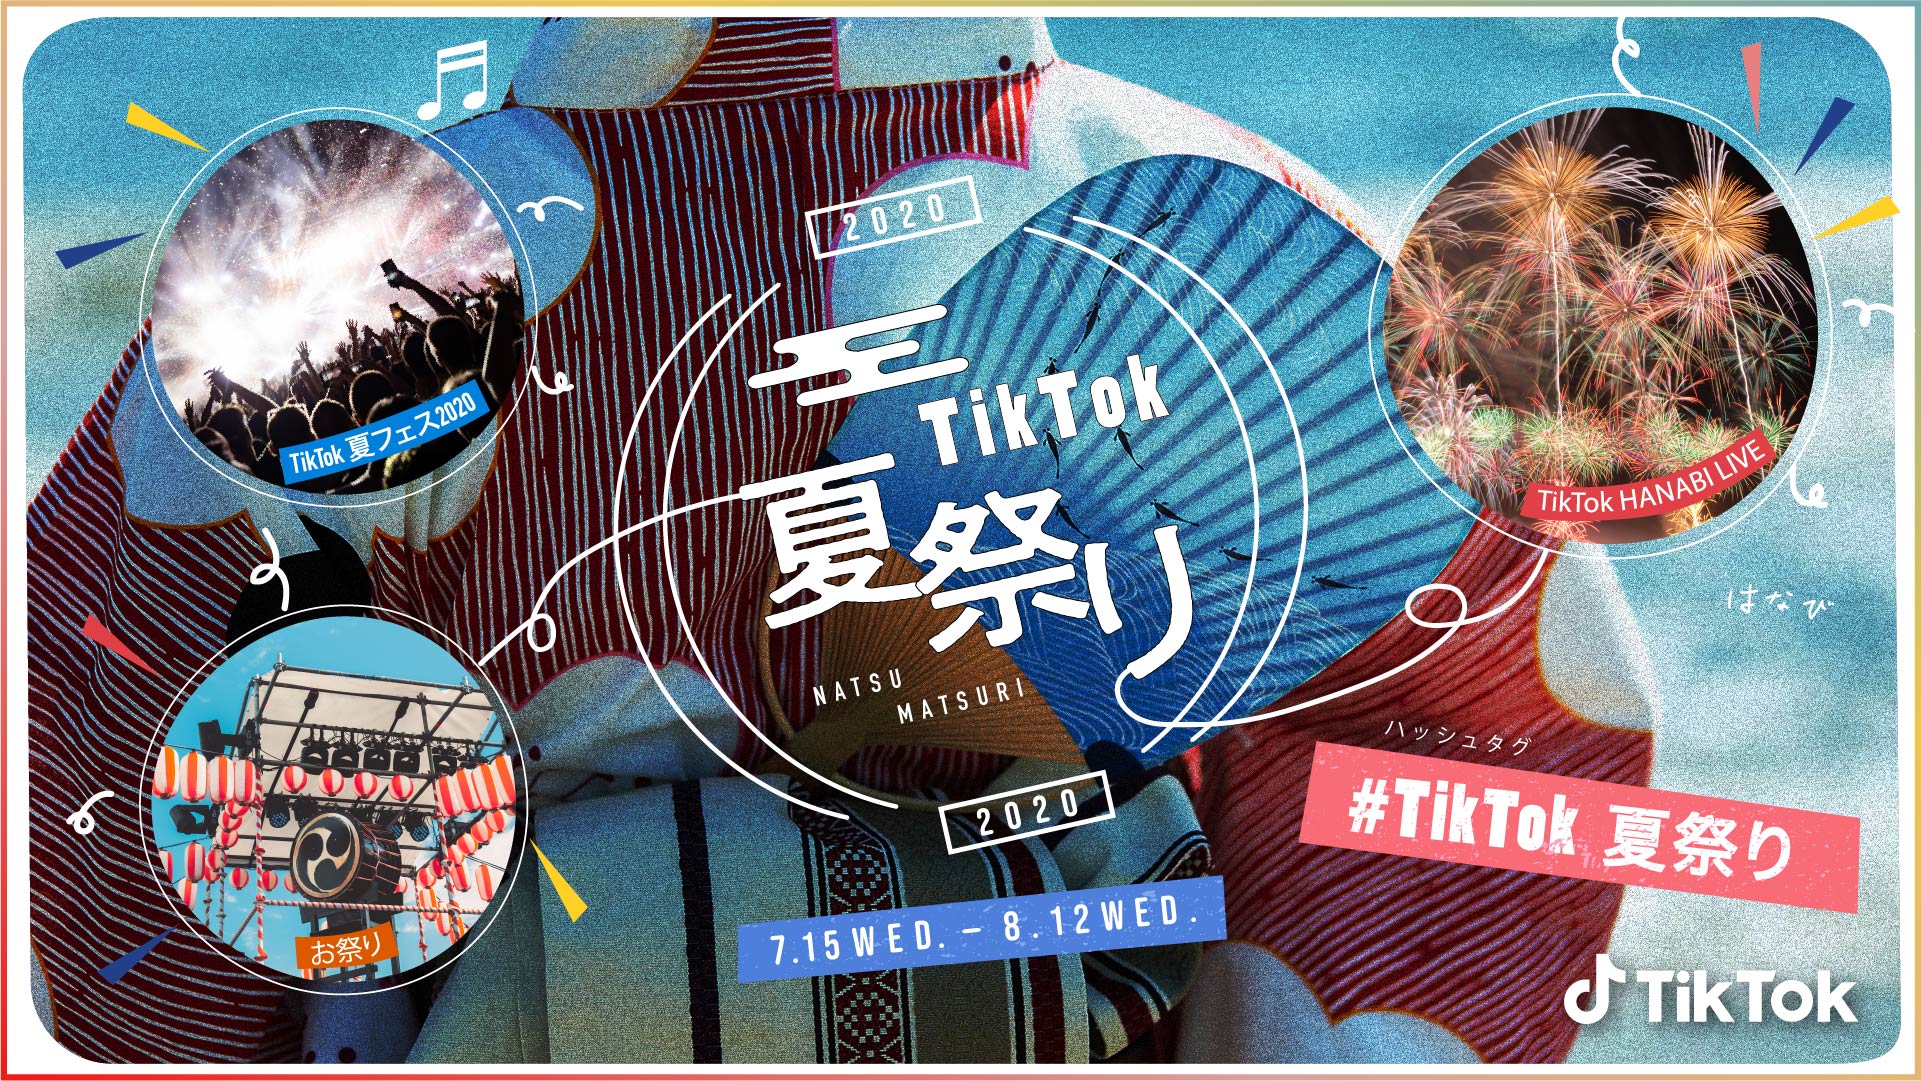 Tiktok夏祭り 今年も開催 今年は夏フェスと花火をtiktok Liveで配信 Bytedance株式会社のプレスリリース